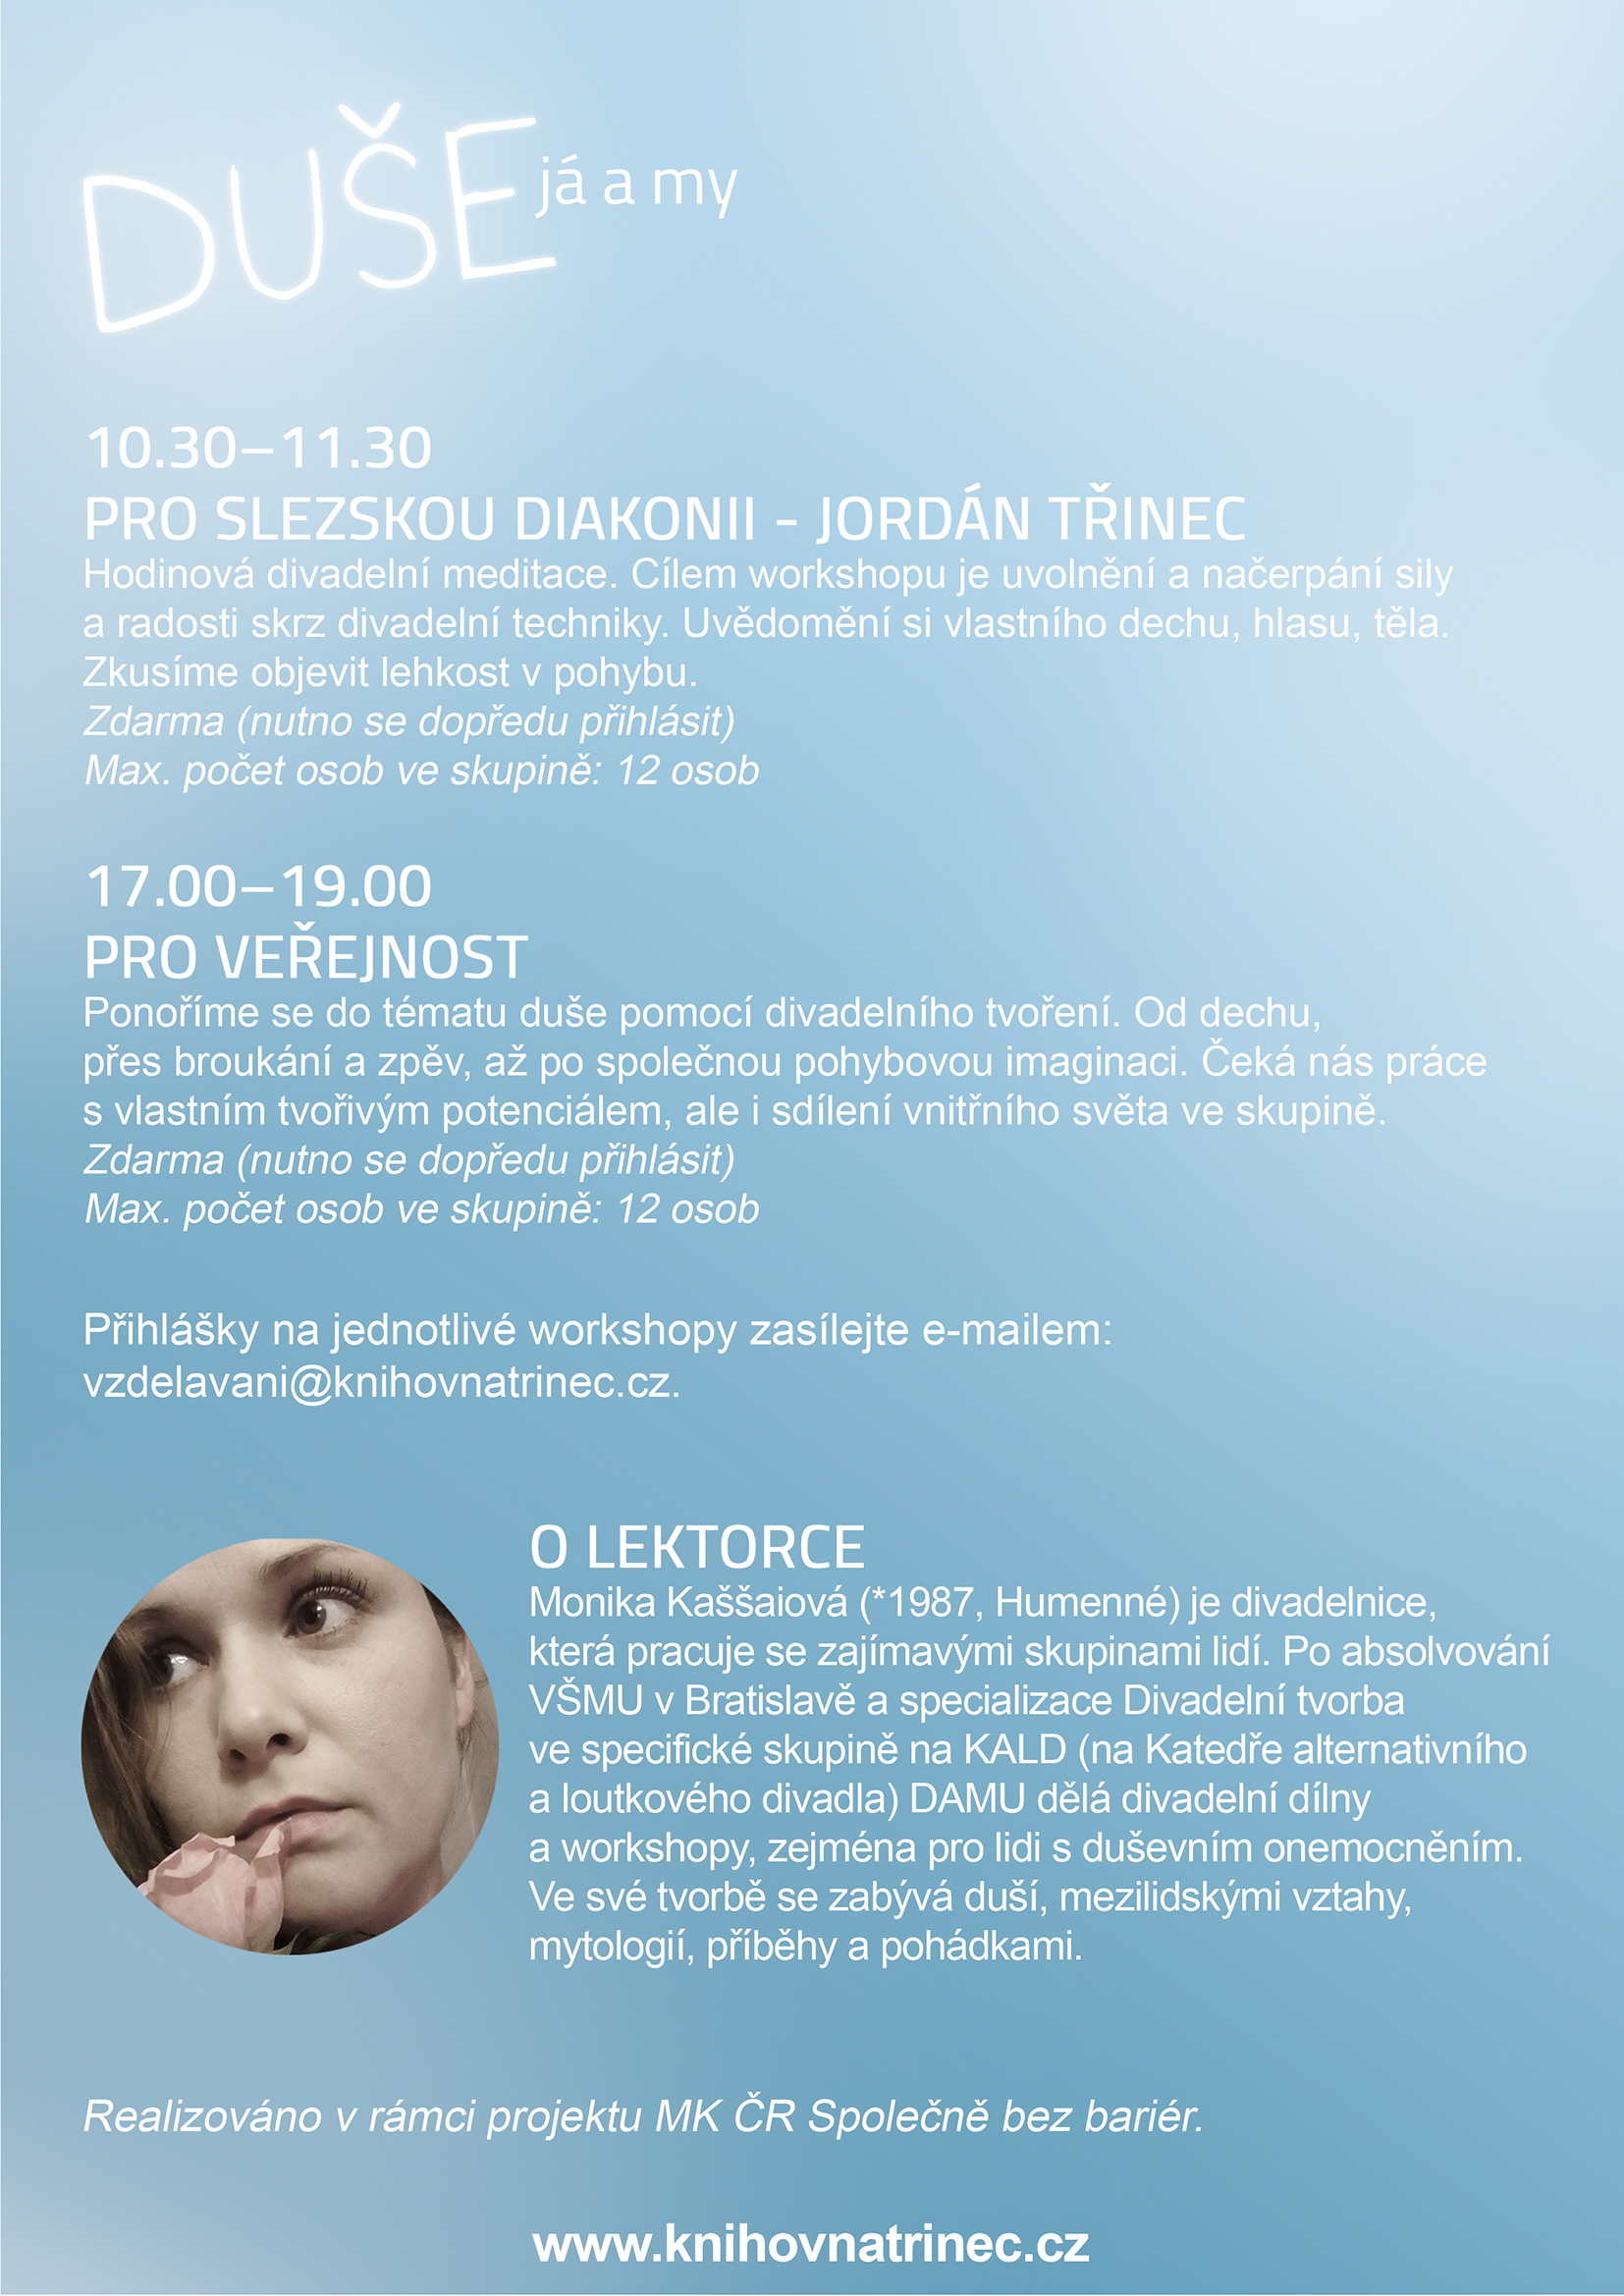 Duše workshop info 2 WEB